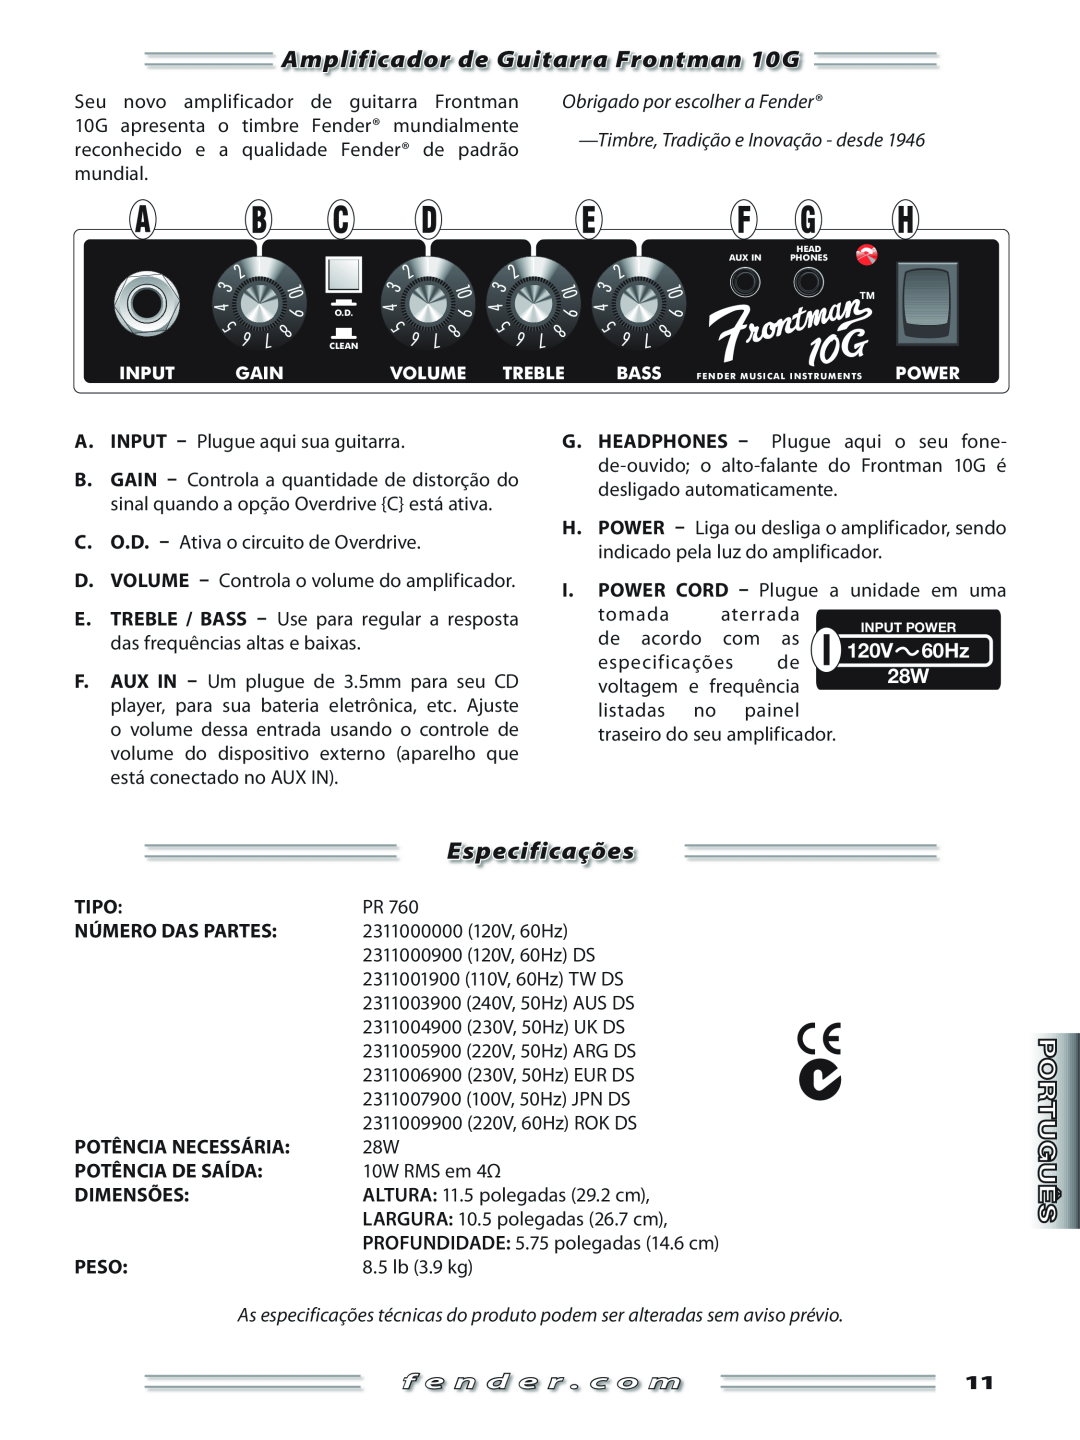 Fender manual Amplificador de Guitarra Frontman 10G, Especificações, Obrigado por escolher a Fender, f e n d e r . c o m 